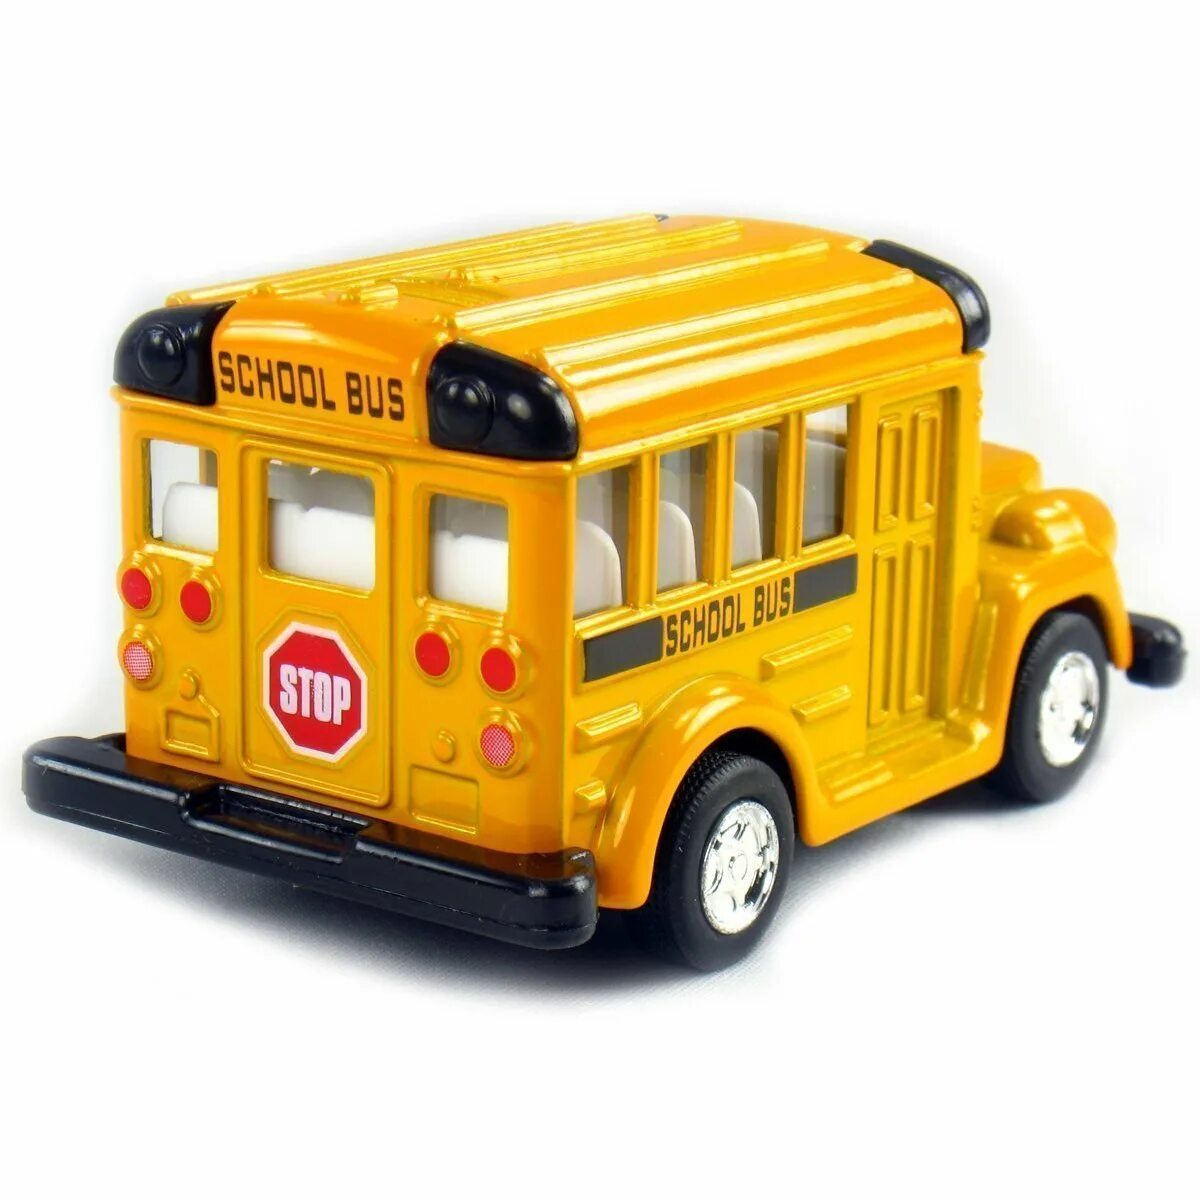 Игрушка школьный автобус Diecast. Игрушка школьный автобус, 77080, Полесье. Американский школьный автобус игрушка. School Bus игрушка.